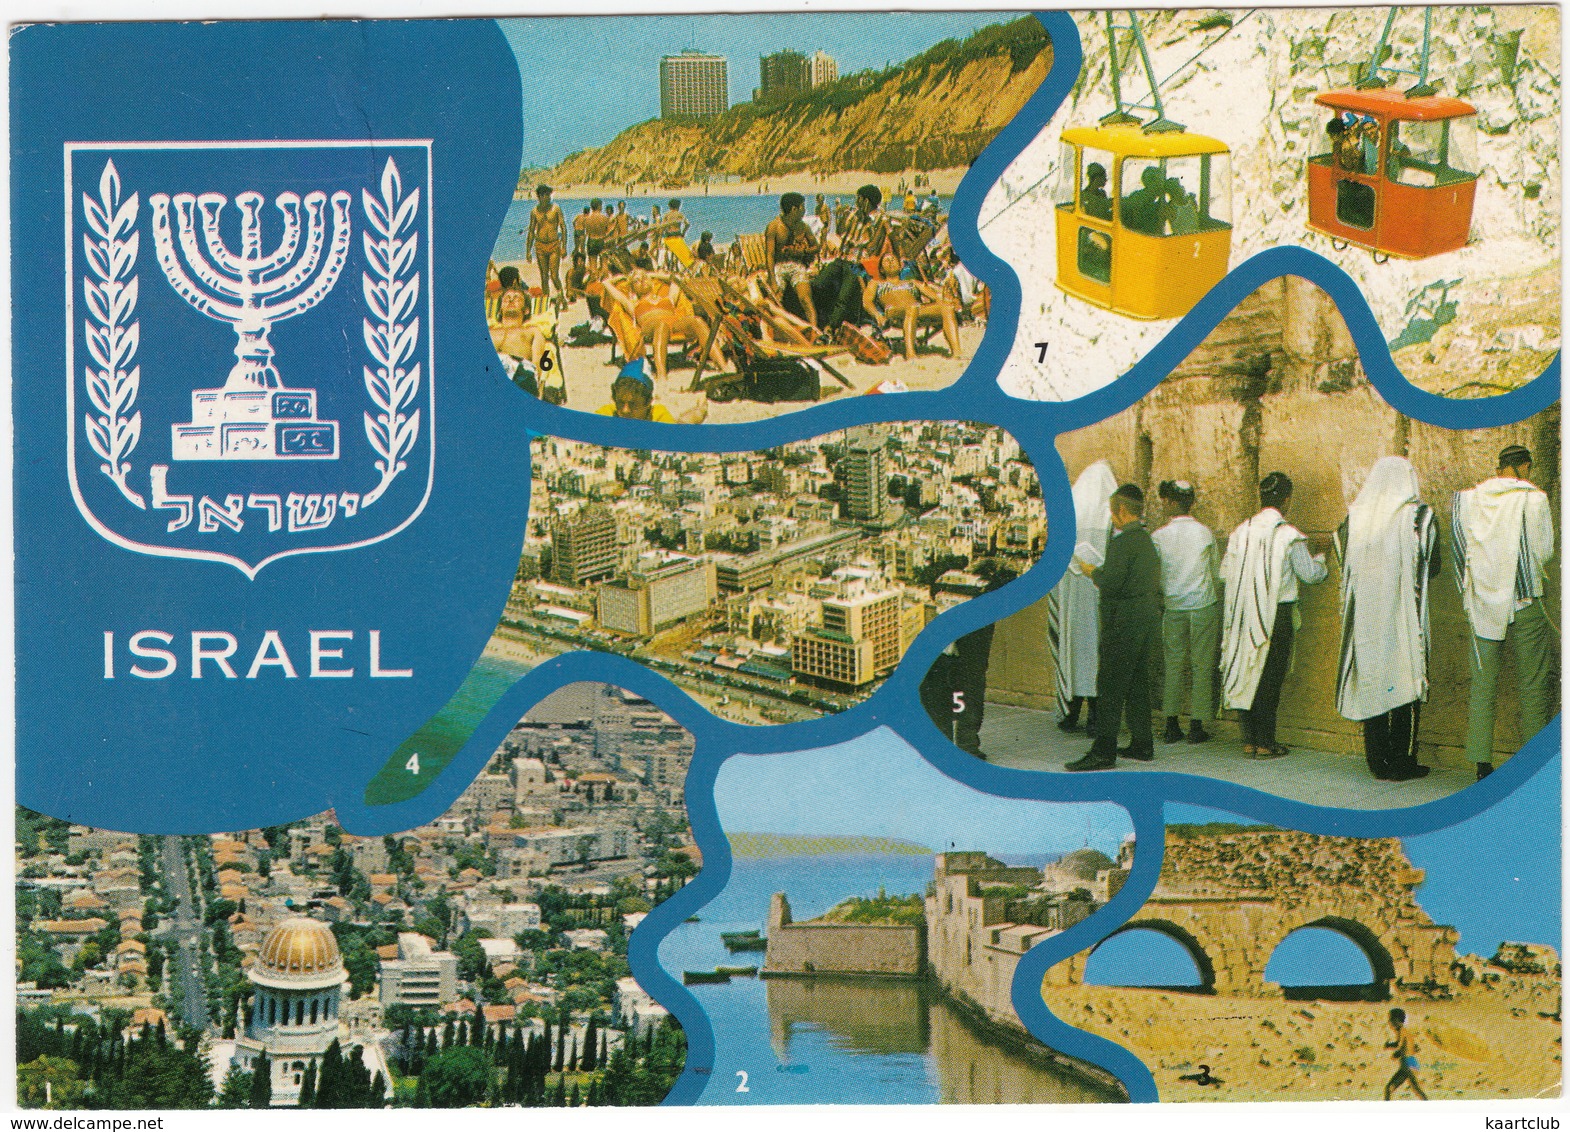 Israel: CABLE CARS At Rosh Hanikra - Haifa, Acre, Caesarea, Tel Aviv, Jerusalem, Netanya - Multiview - Israel